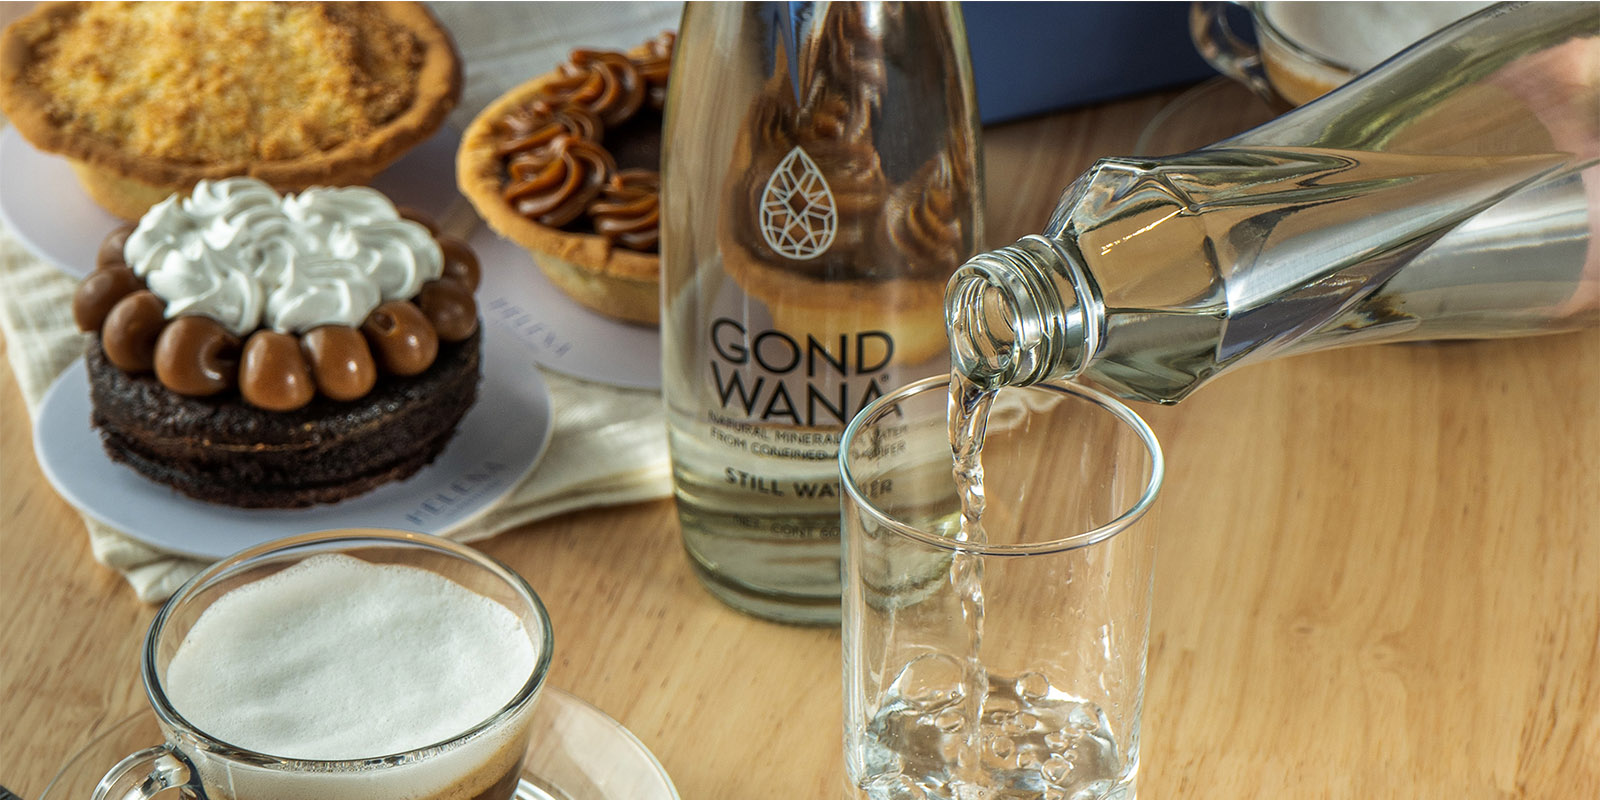 Una botella de agua mineral premium Gond Wana se vierte en un vaso delante de otra botella de Gond Wana, sobre una mesa servida con pastelería dulce, diseño de packaging por Tridimage.